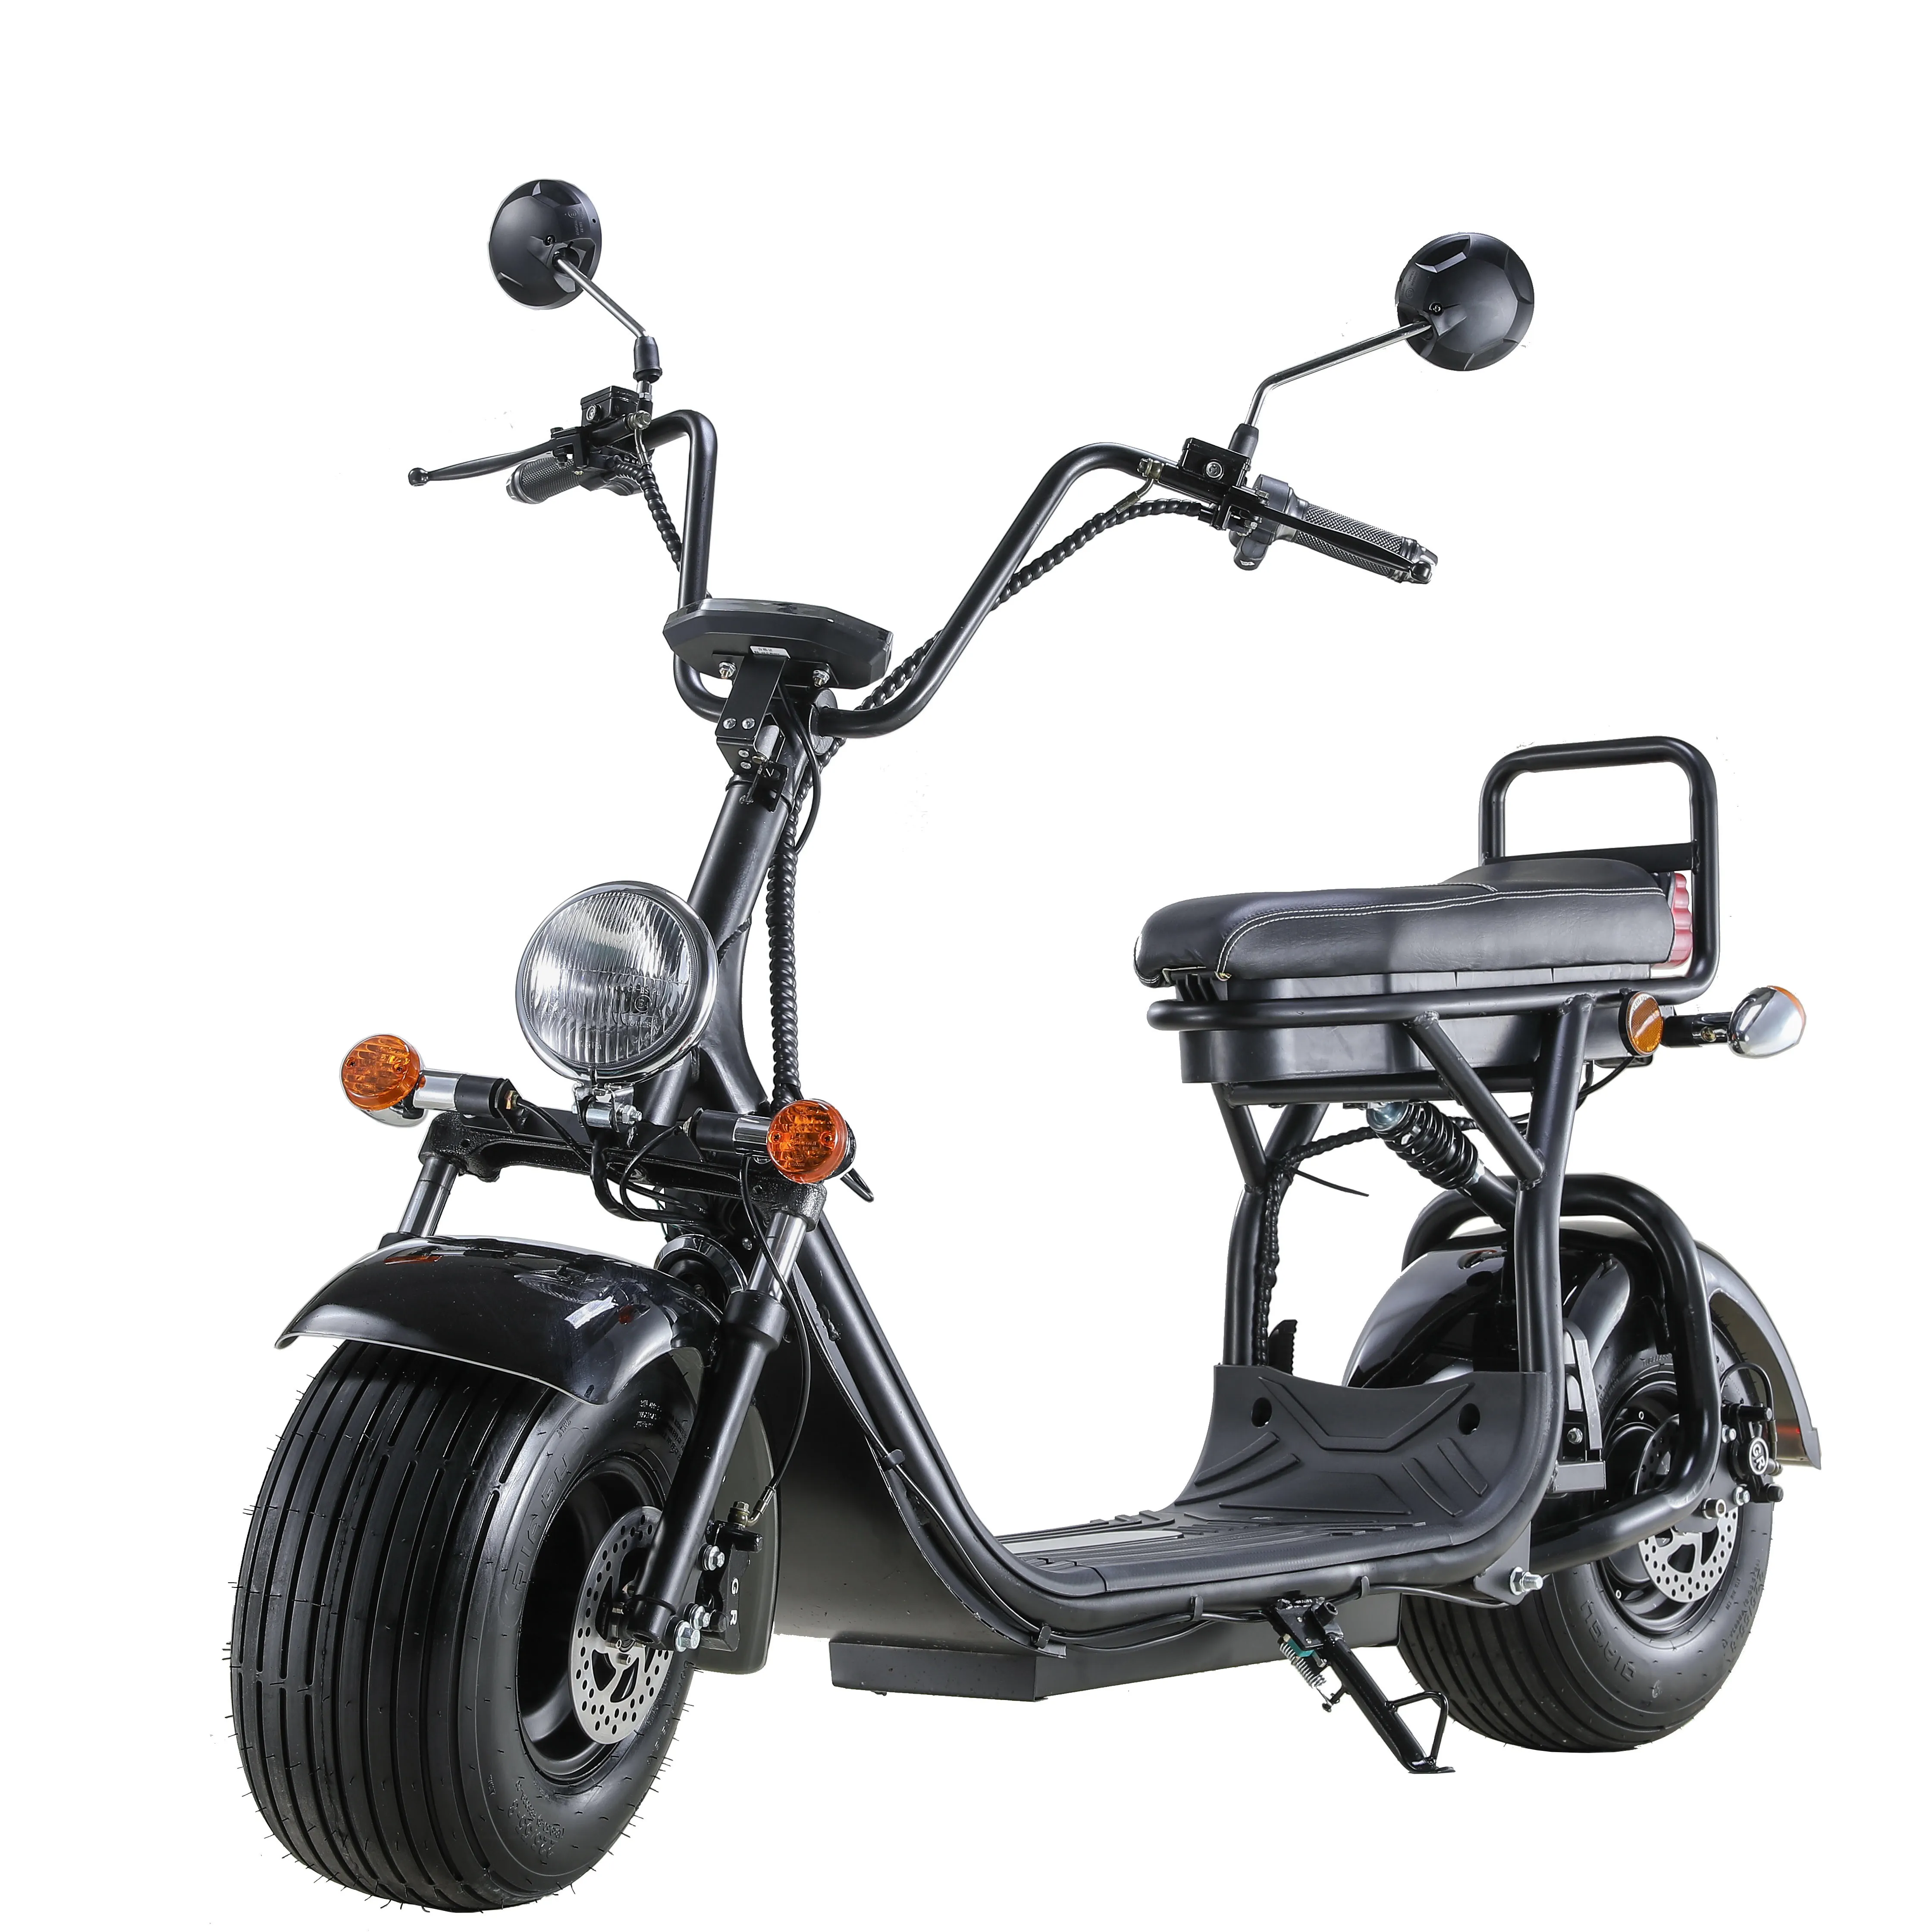 كاسكو Motocicleta Choope دراجة نارية/دراجة/Citycoco/سكوتر الكهربائية/الدراجة شل النموذج